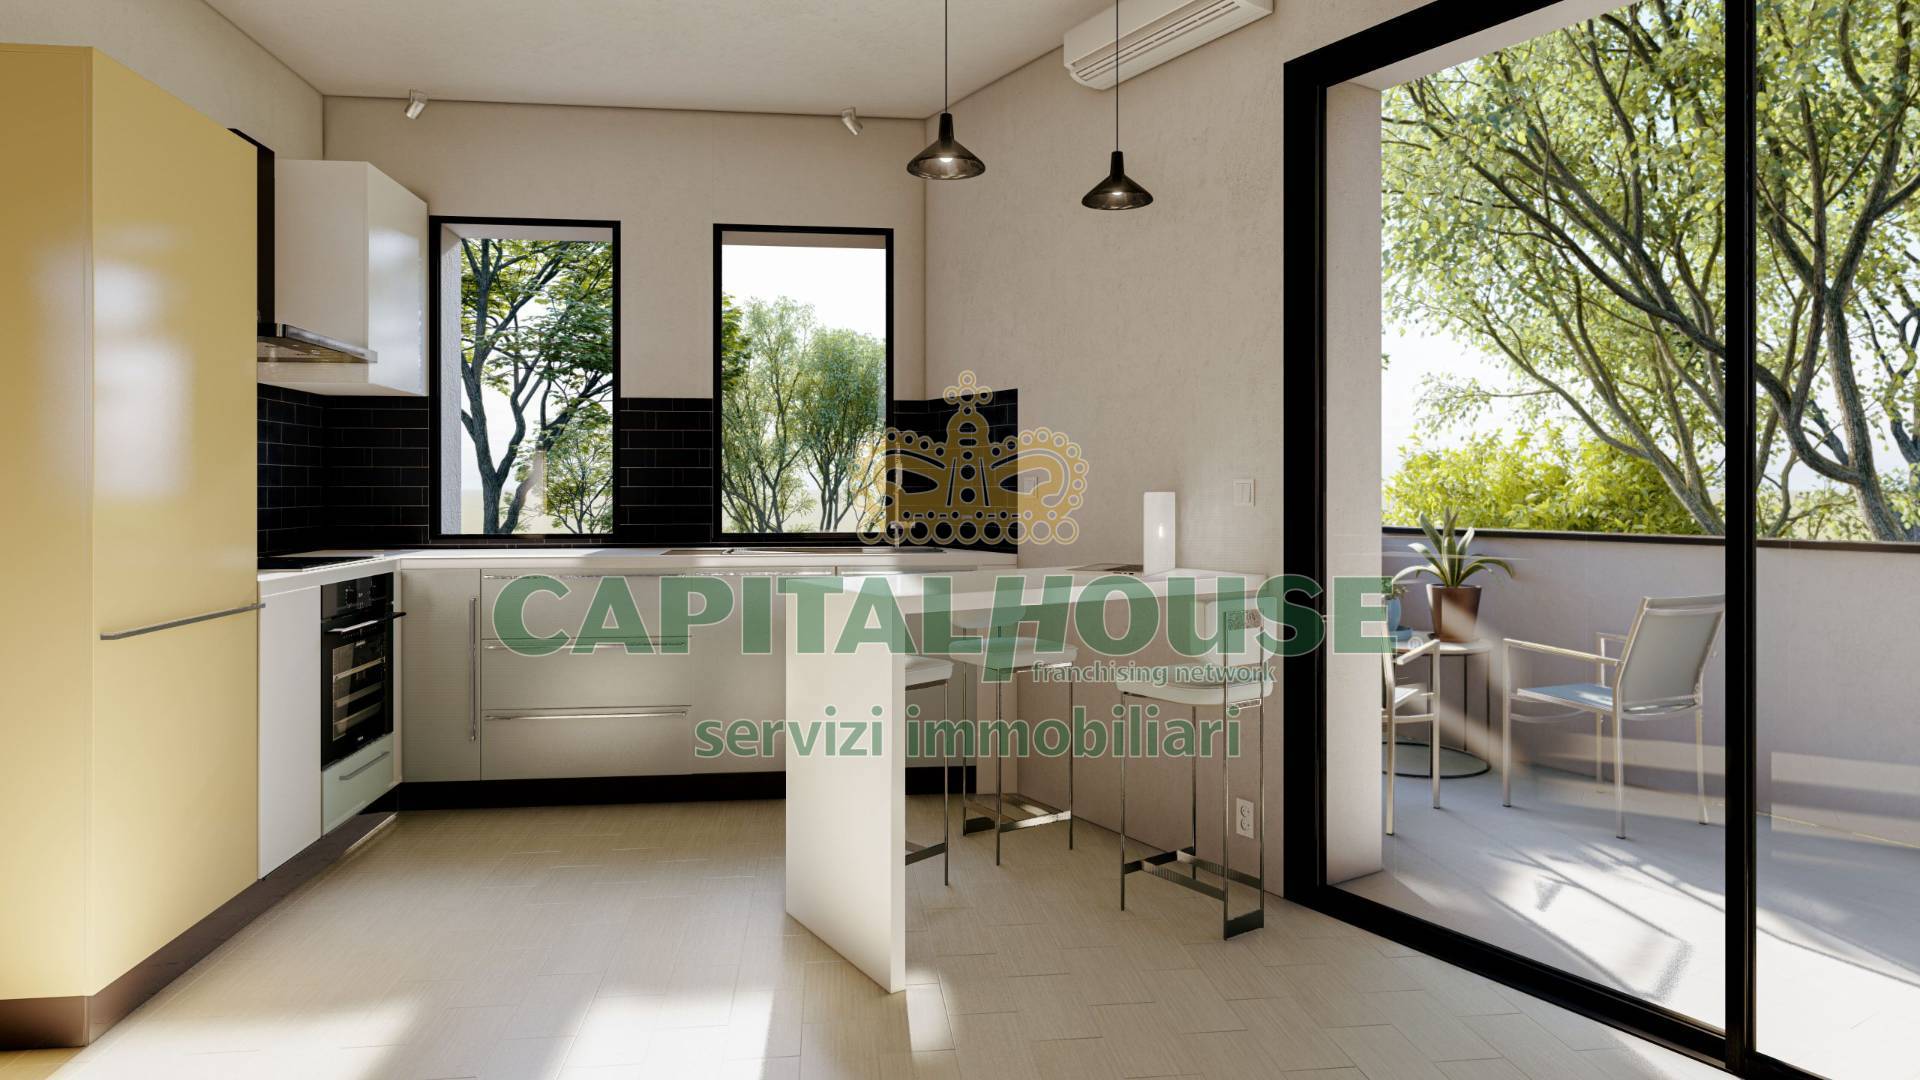 Appartamento in vendita a Pianoro, 3 locali, zona ignano, prezzo € 320.000 | PortaleAgenzieImmobiliari.it